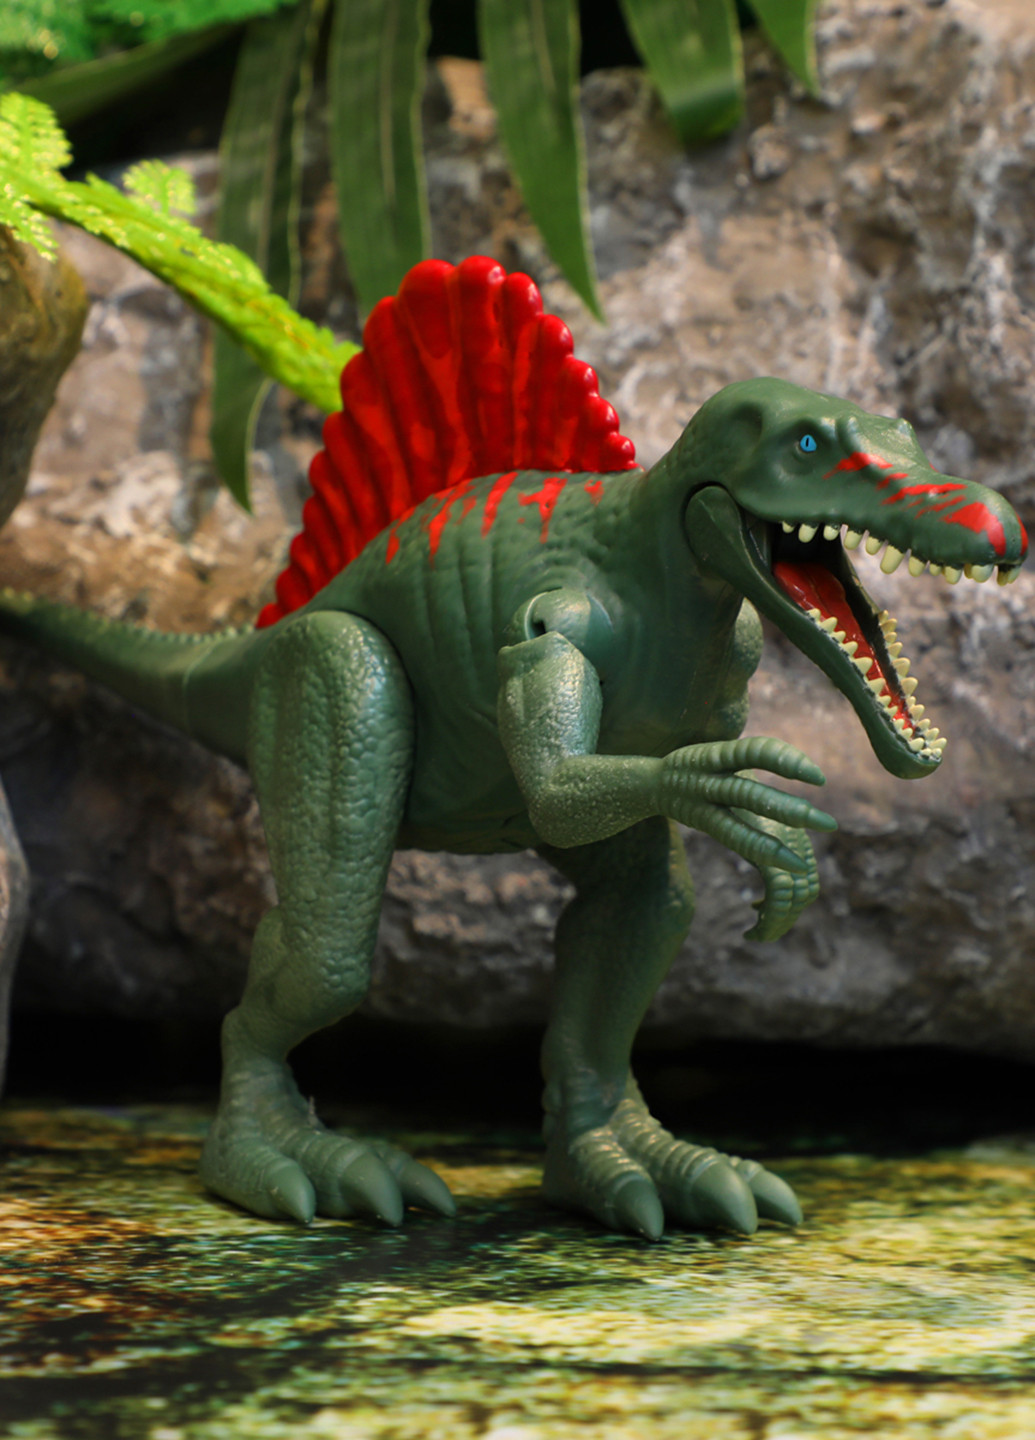 Інтерактивна іграшка Спінозавр, 14 см Dinos Unleashed (257469210)